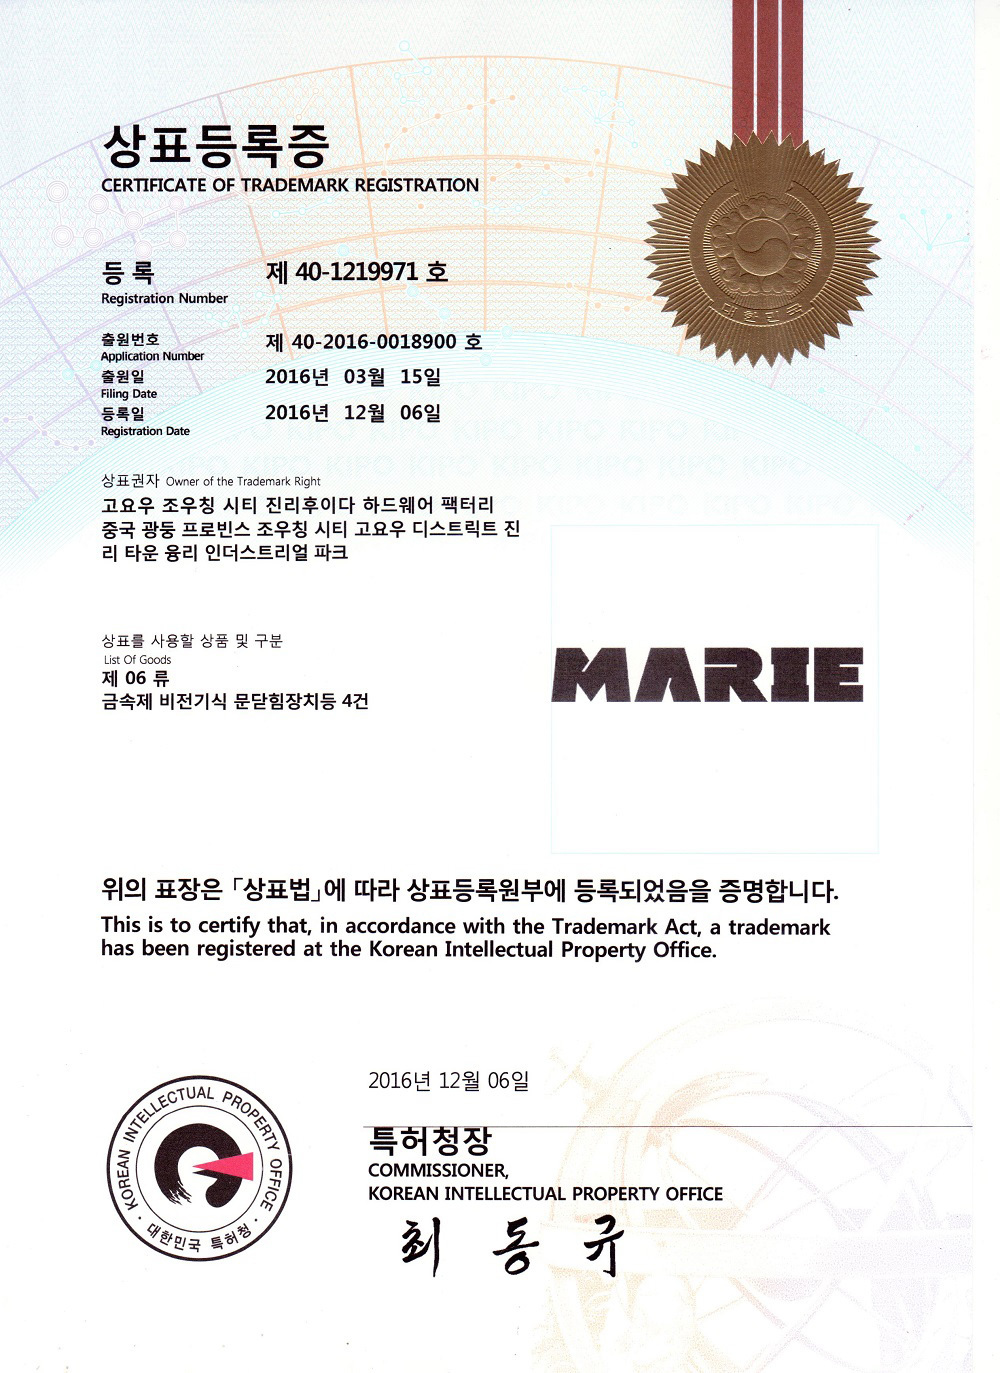 MARIE韩国商标证书